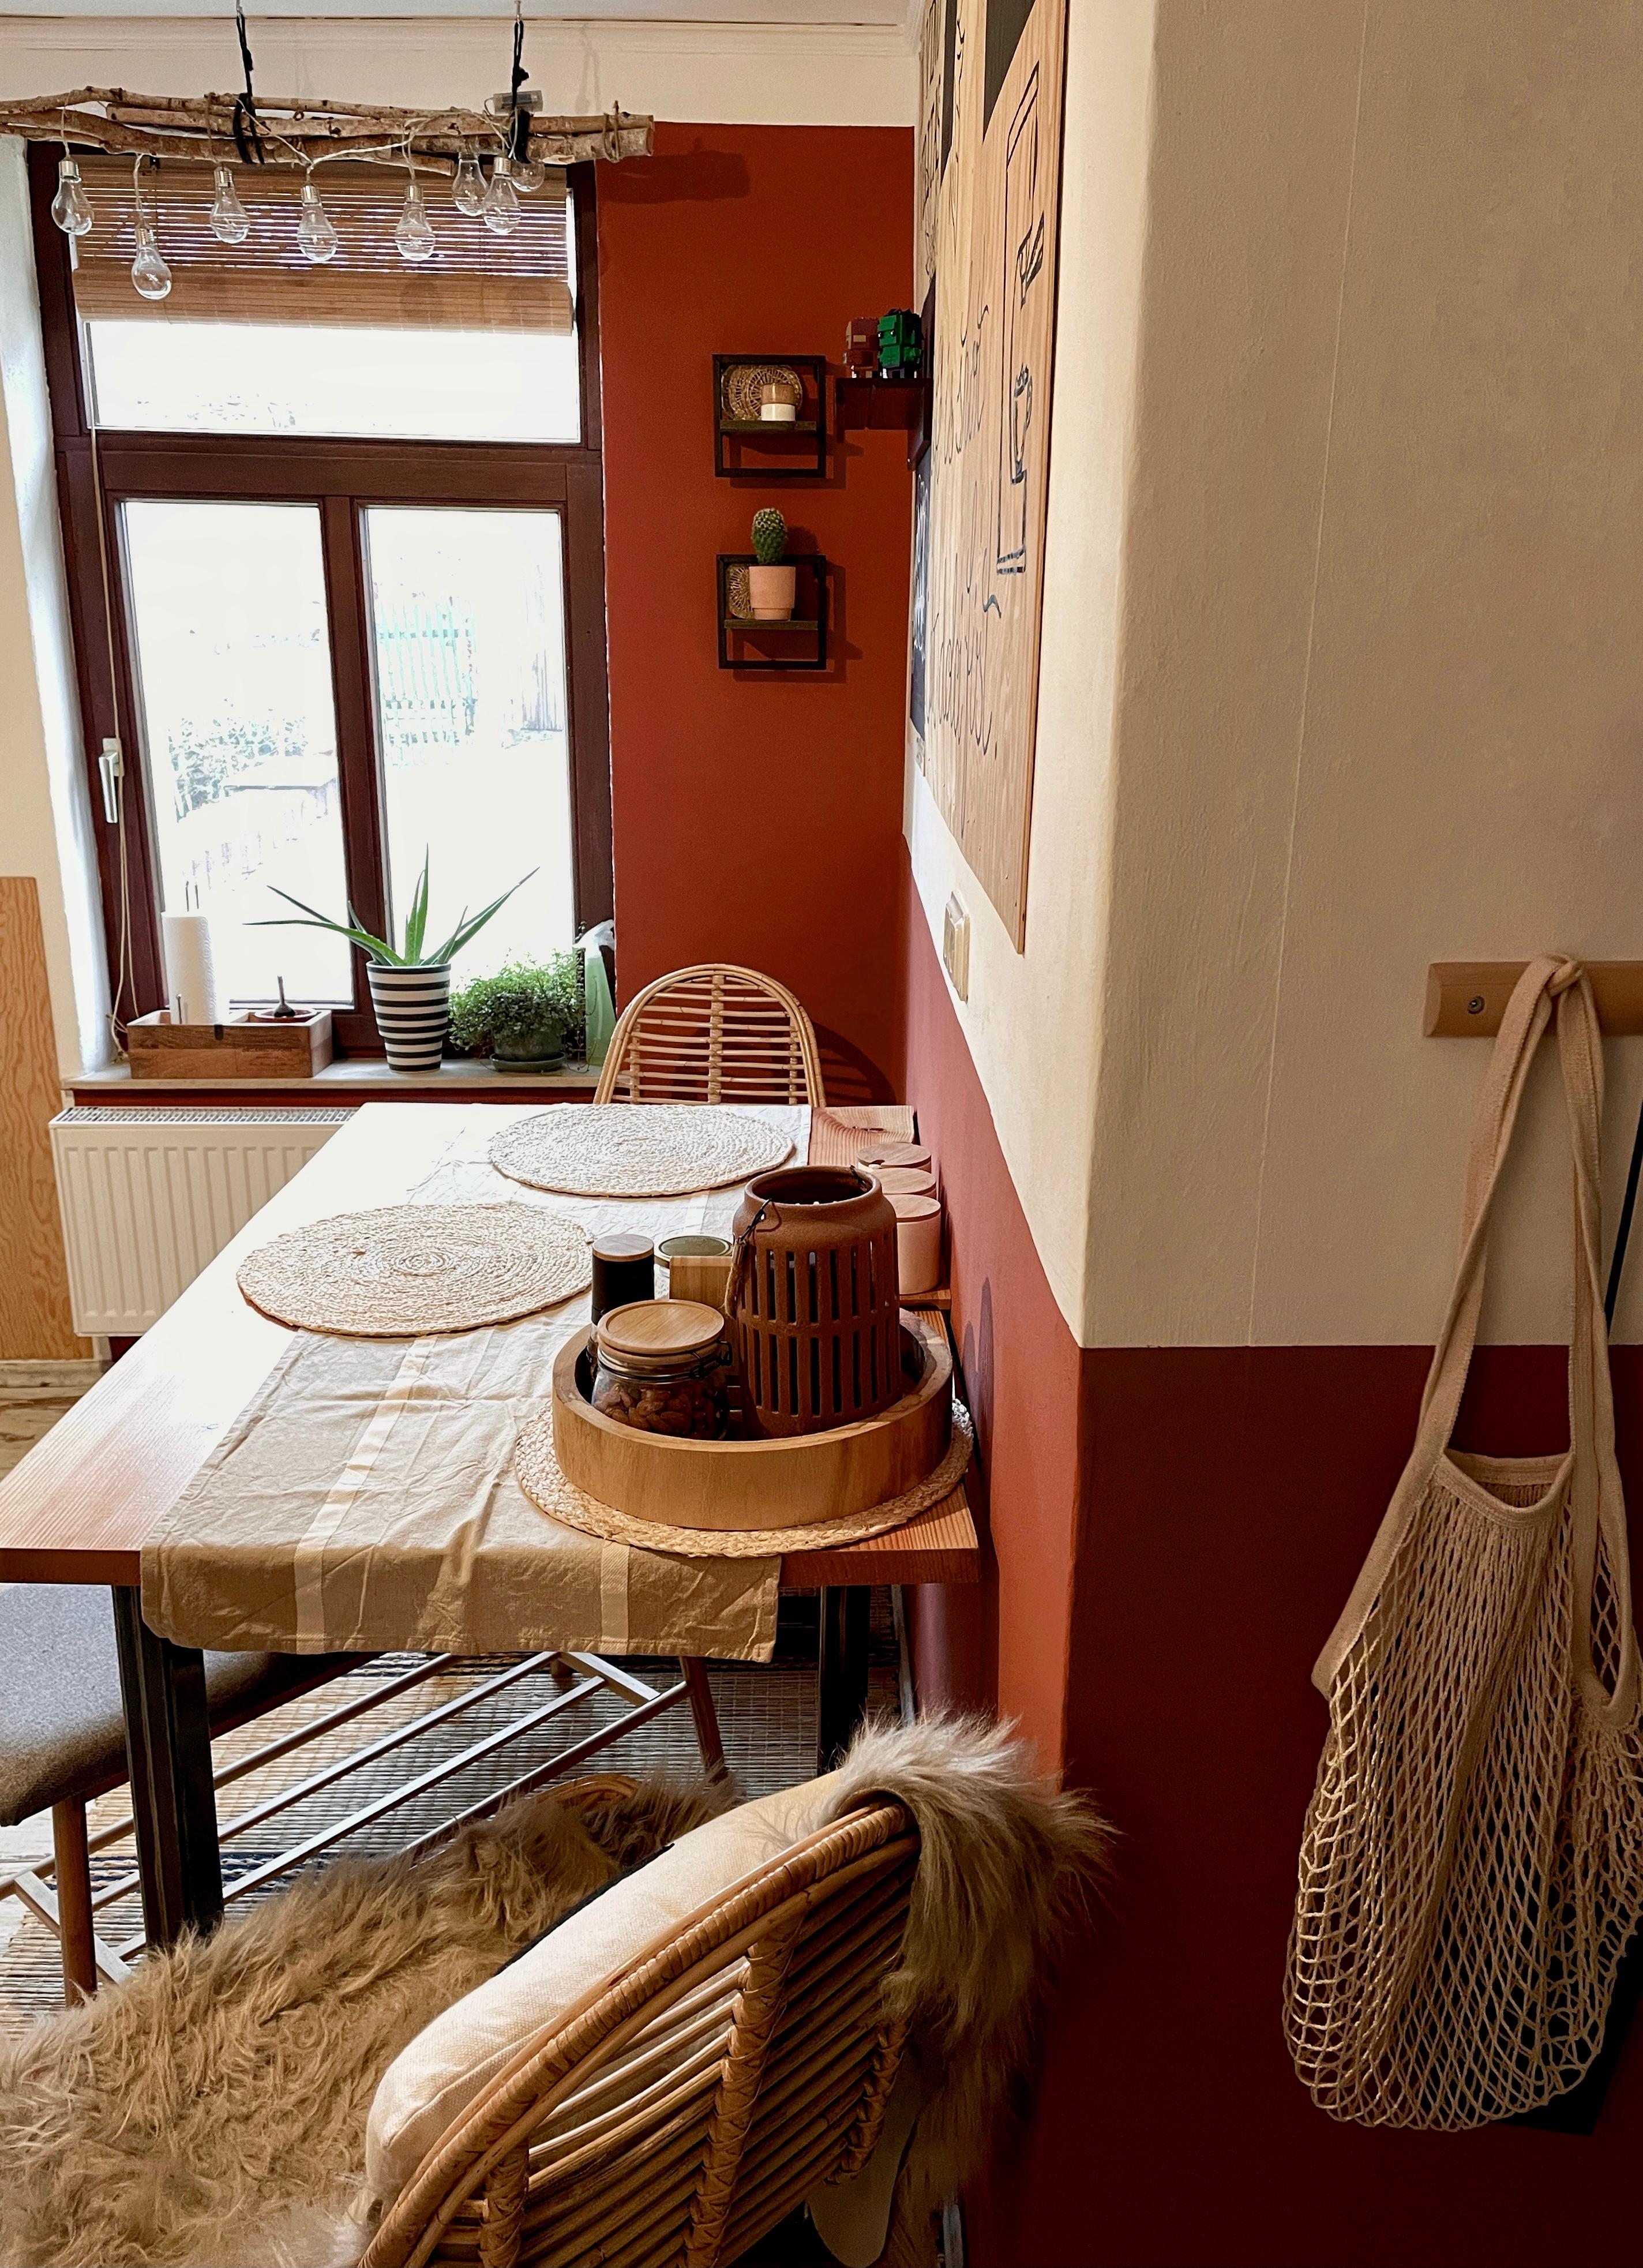 Küchenliebe ☀️🧡 #küche#terracotta#boholiving#couchmagazin#sunnydayd